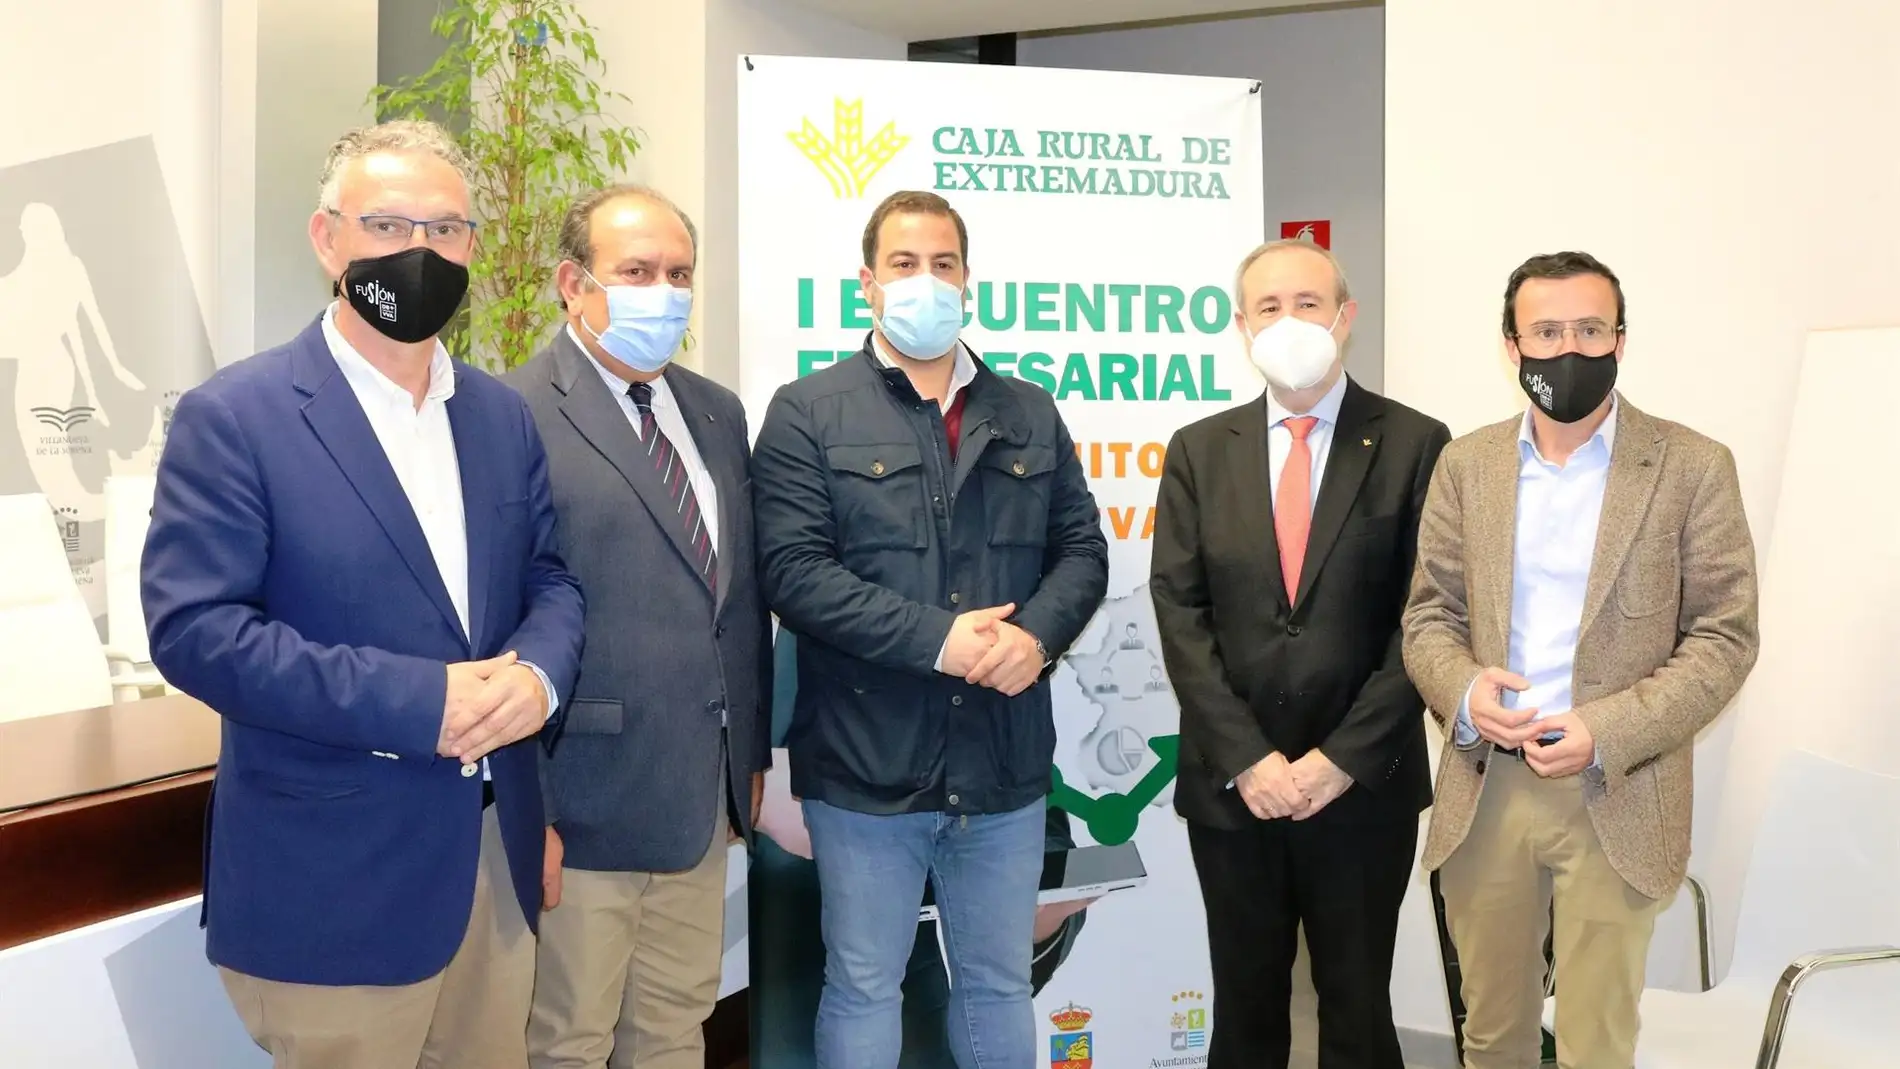 Caja Rural de Extremadura organiza un encuentro con empresarios de Don Benito y Villanueva de la Serena